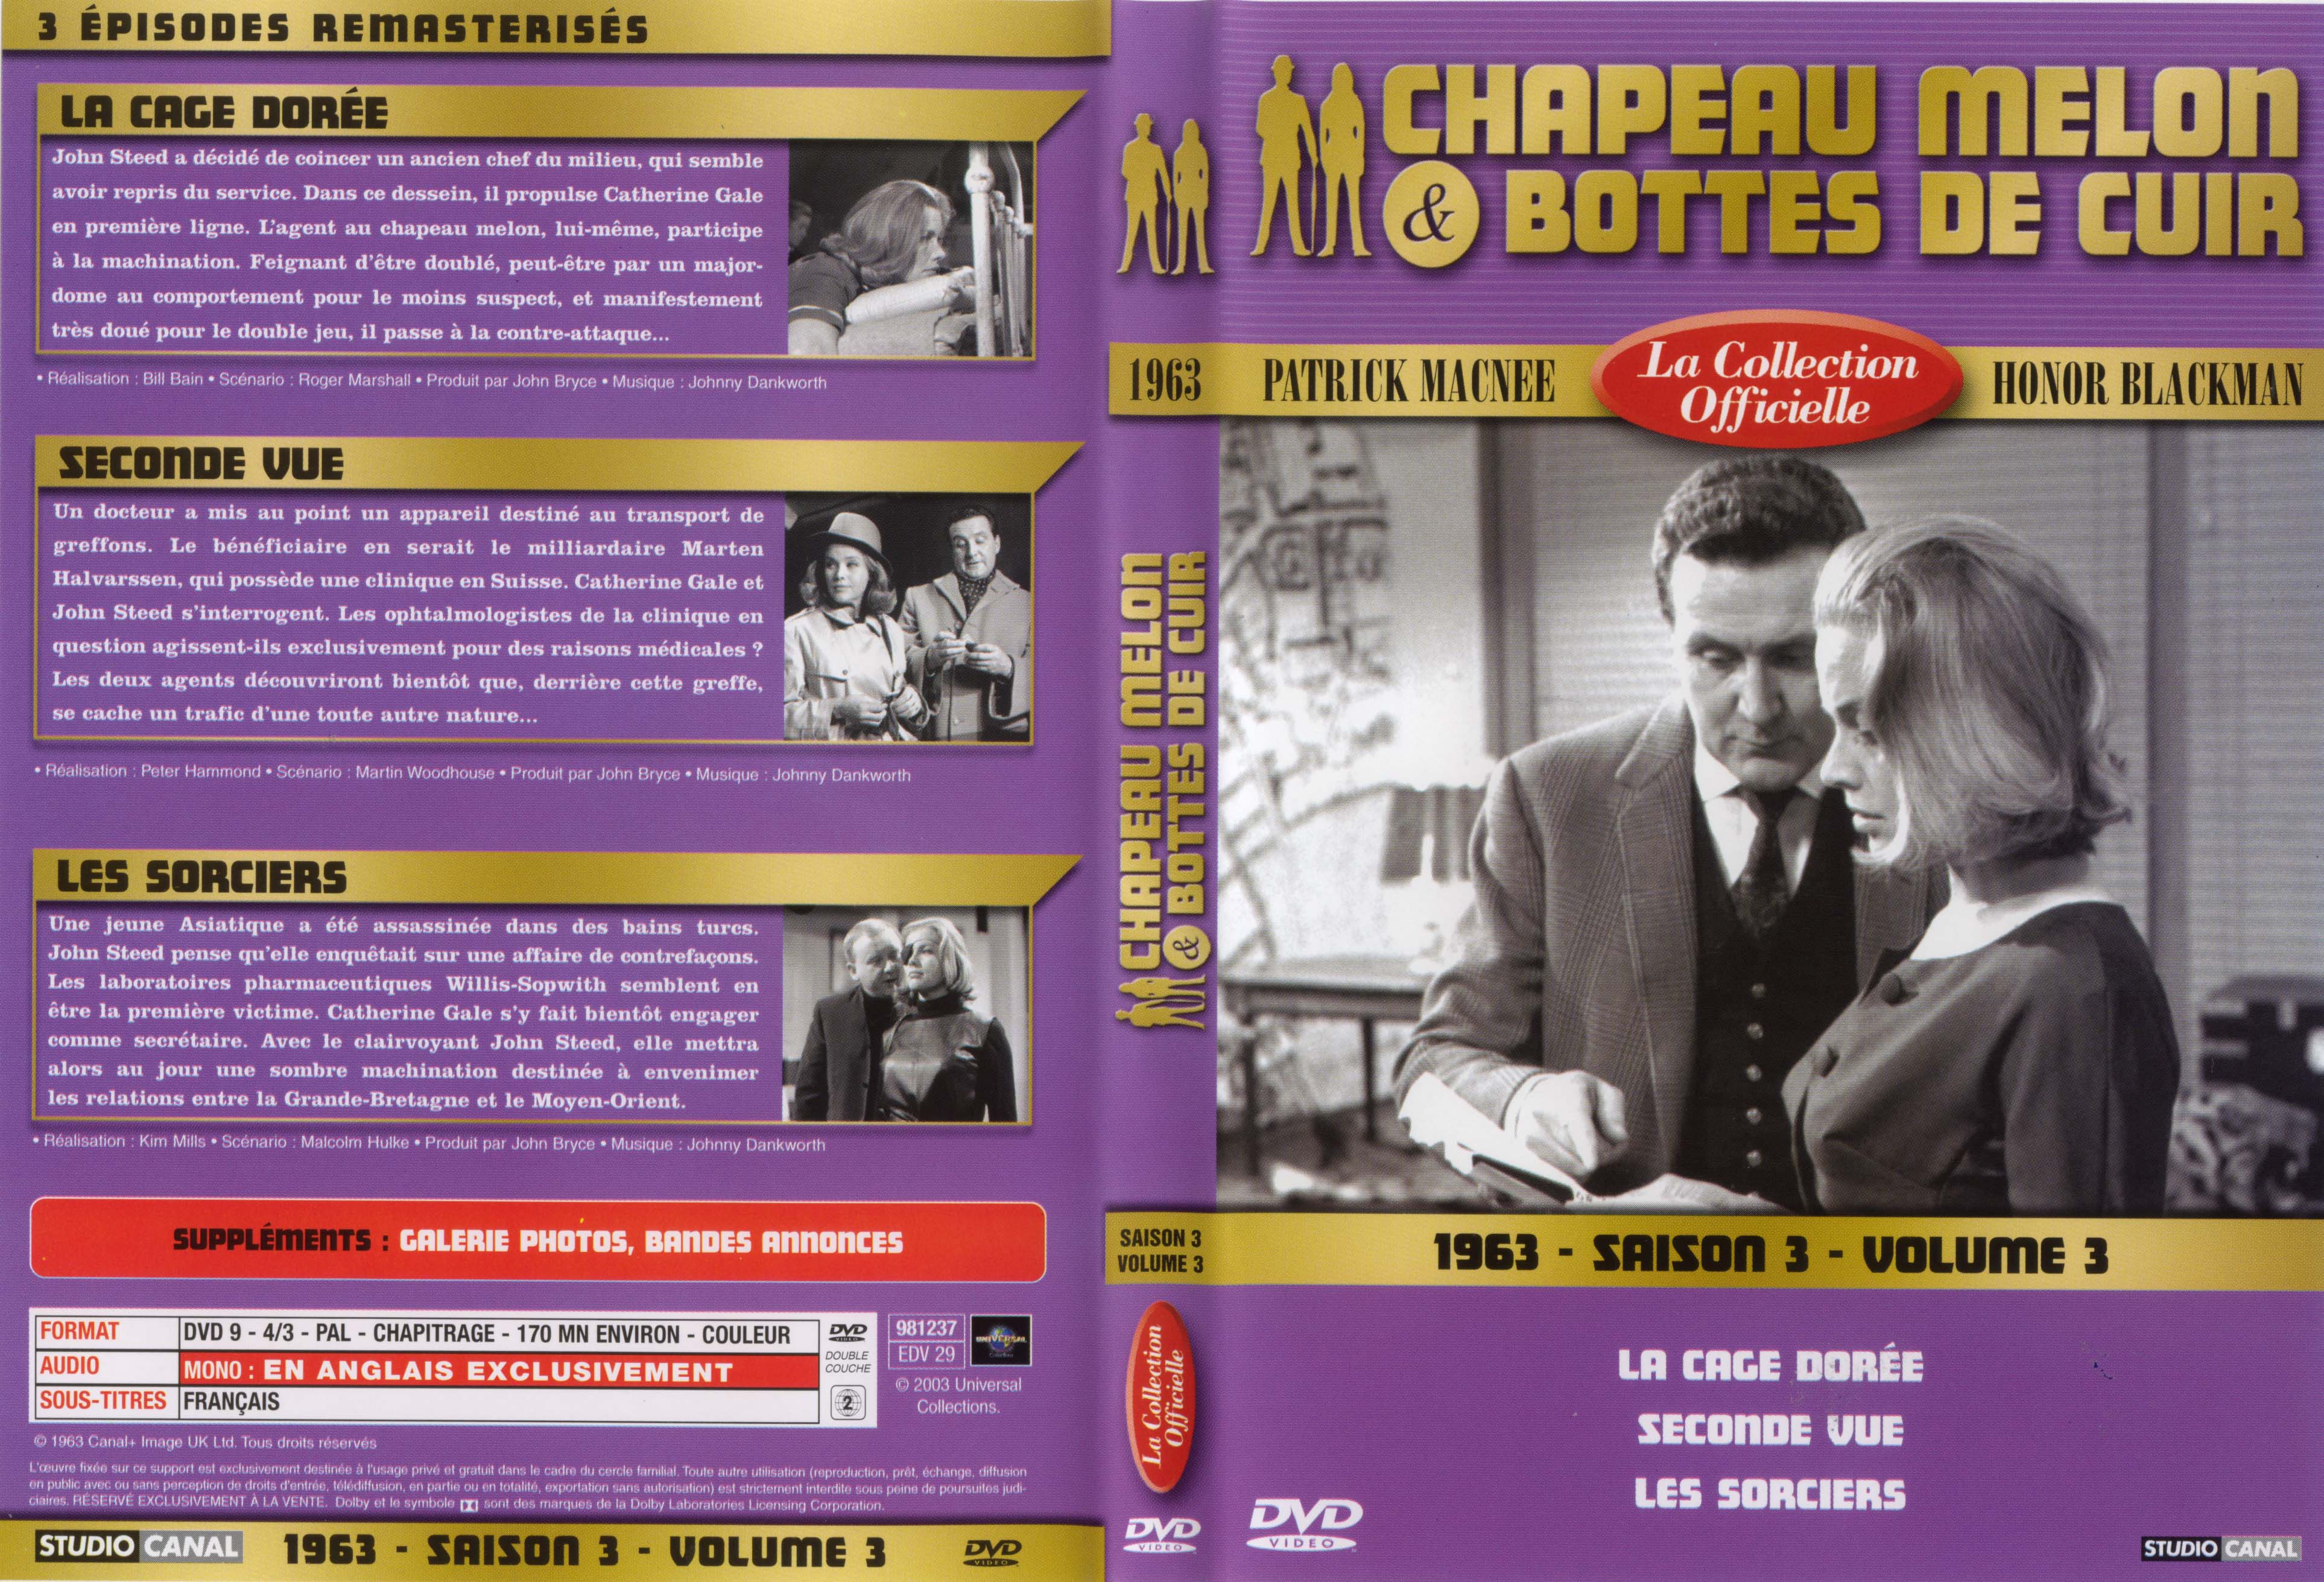 Jaquette DVD Chapeau melon et bottes de cuir 1963 saison 3 vol 3